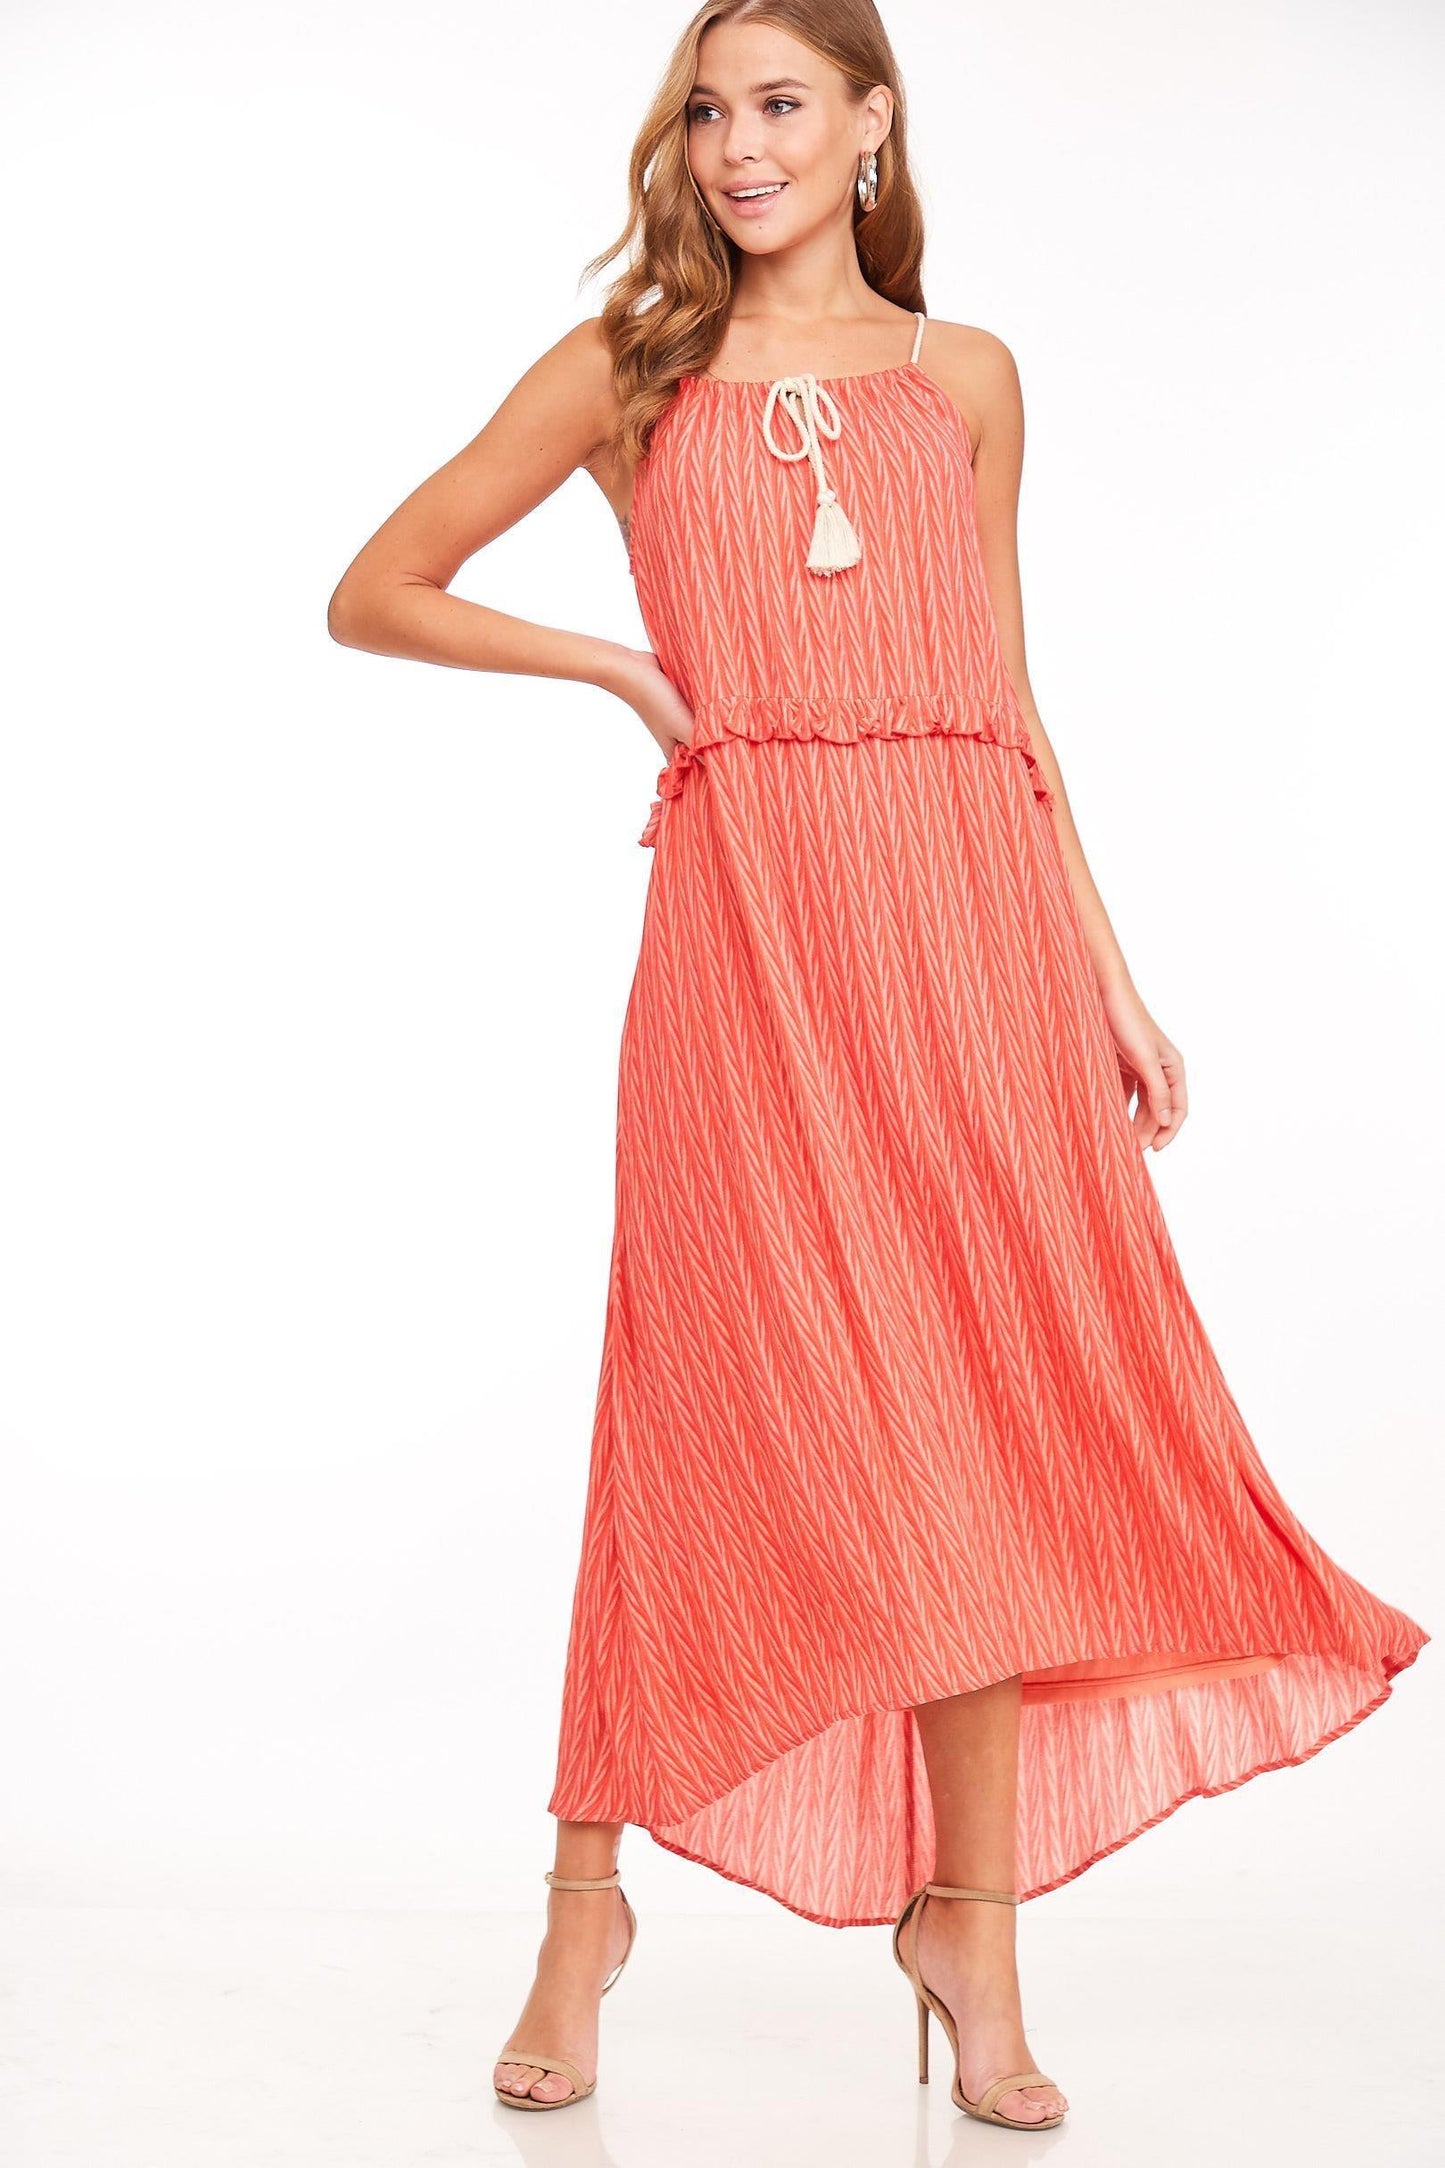 tassel tie chevron maxi dress-Dress-L Love-Coral-LV2577-4-tikolighting